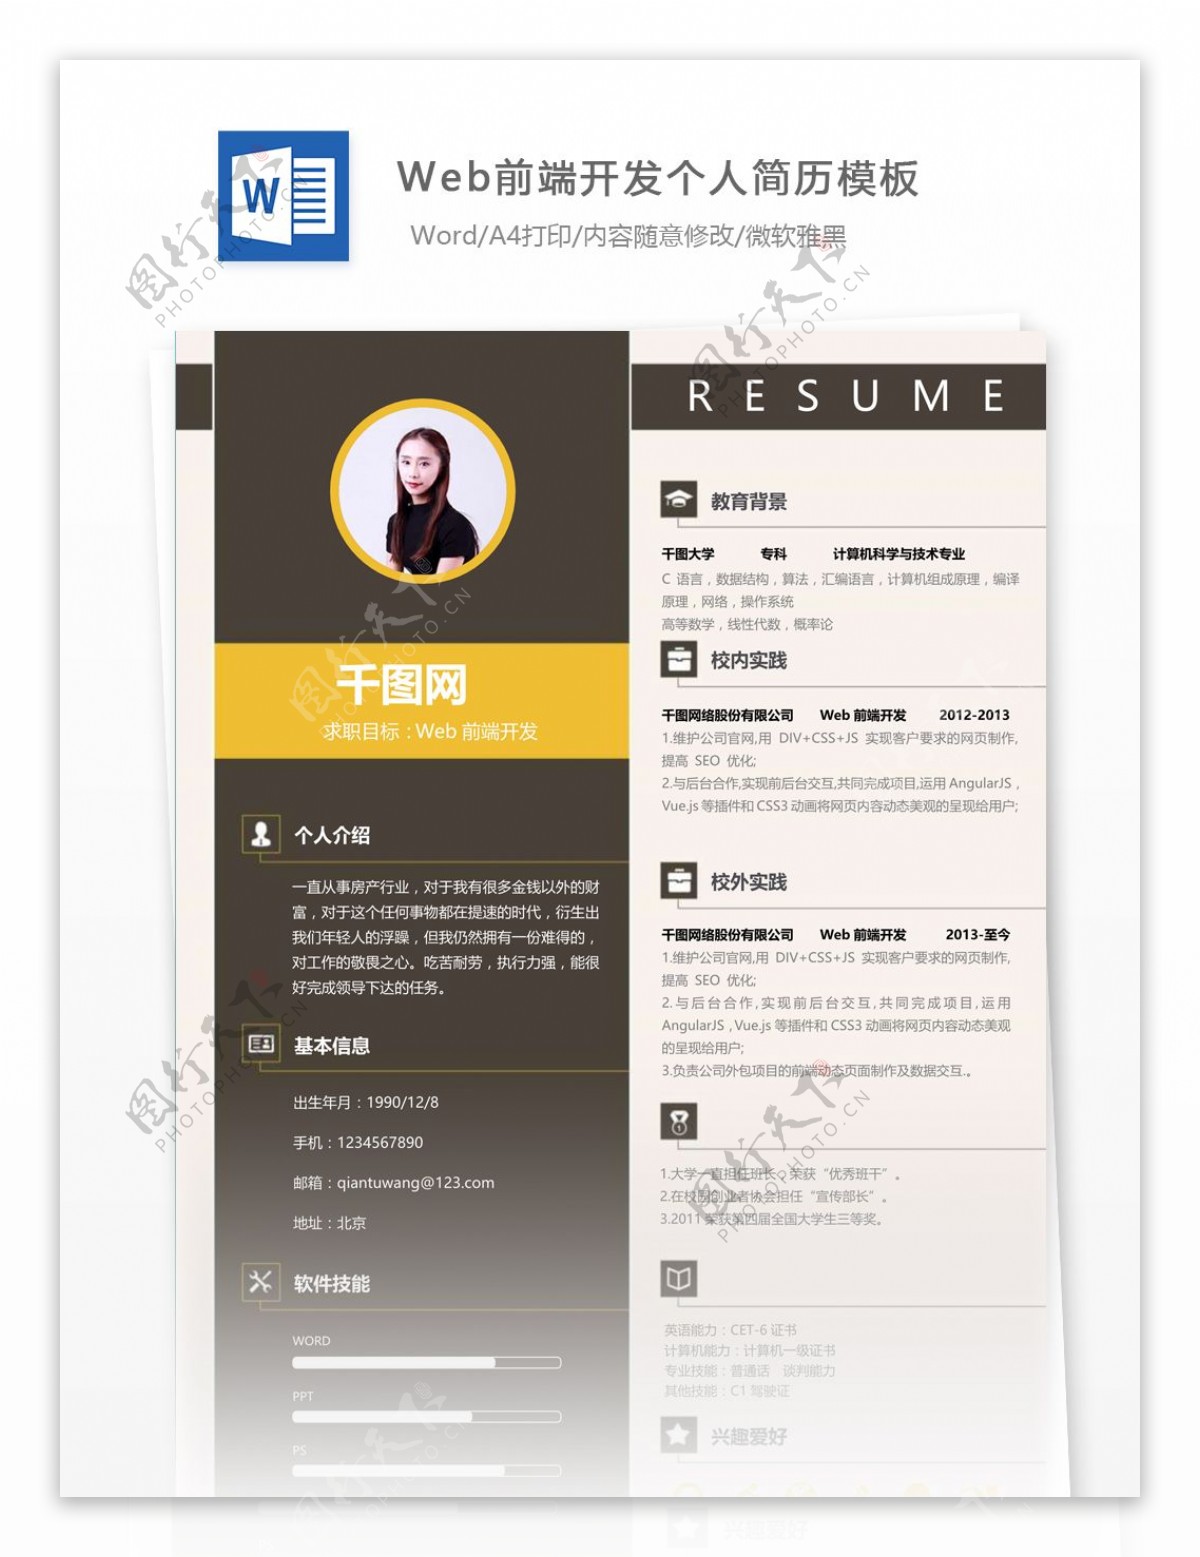 李仕瑩web前端开发个人简历模板